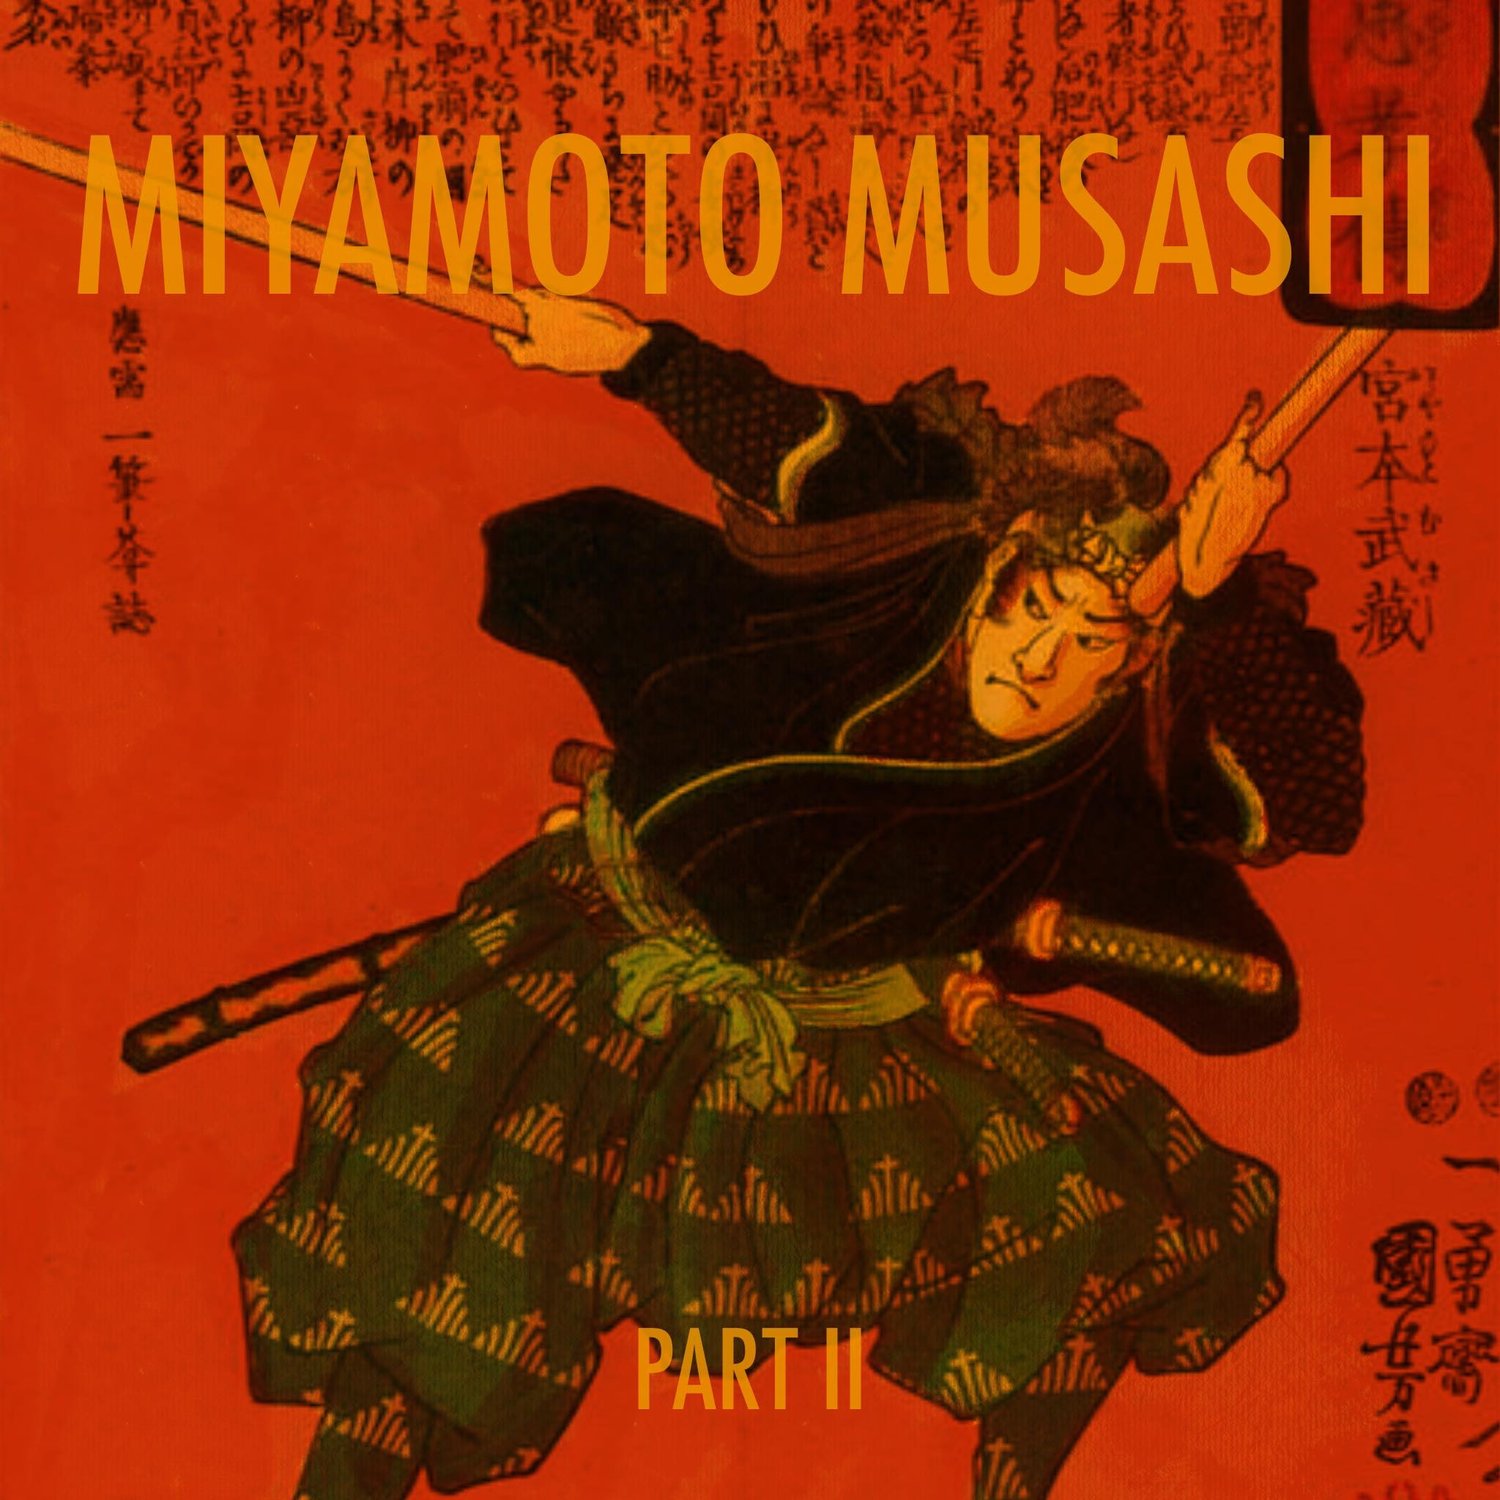 EPISODE 103: The Lone Samurai, Miyamoto Musashi (Part 2)